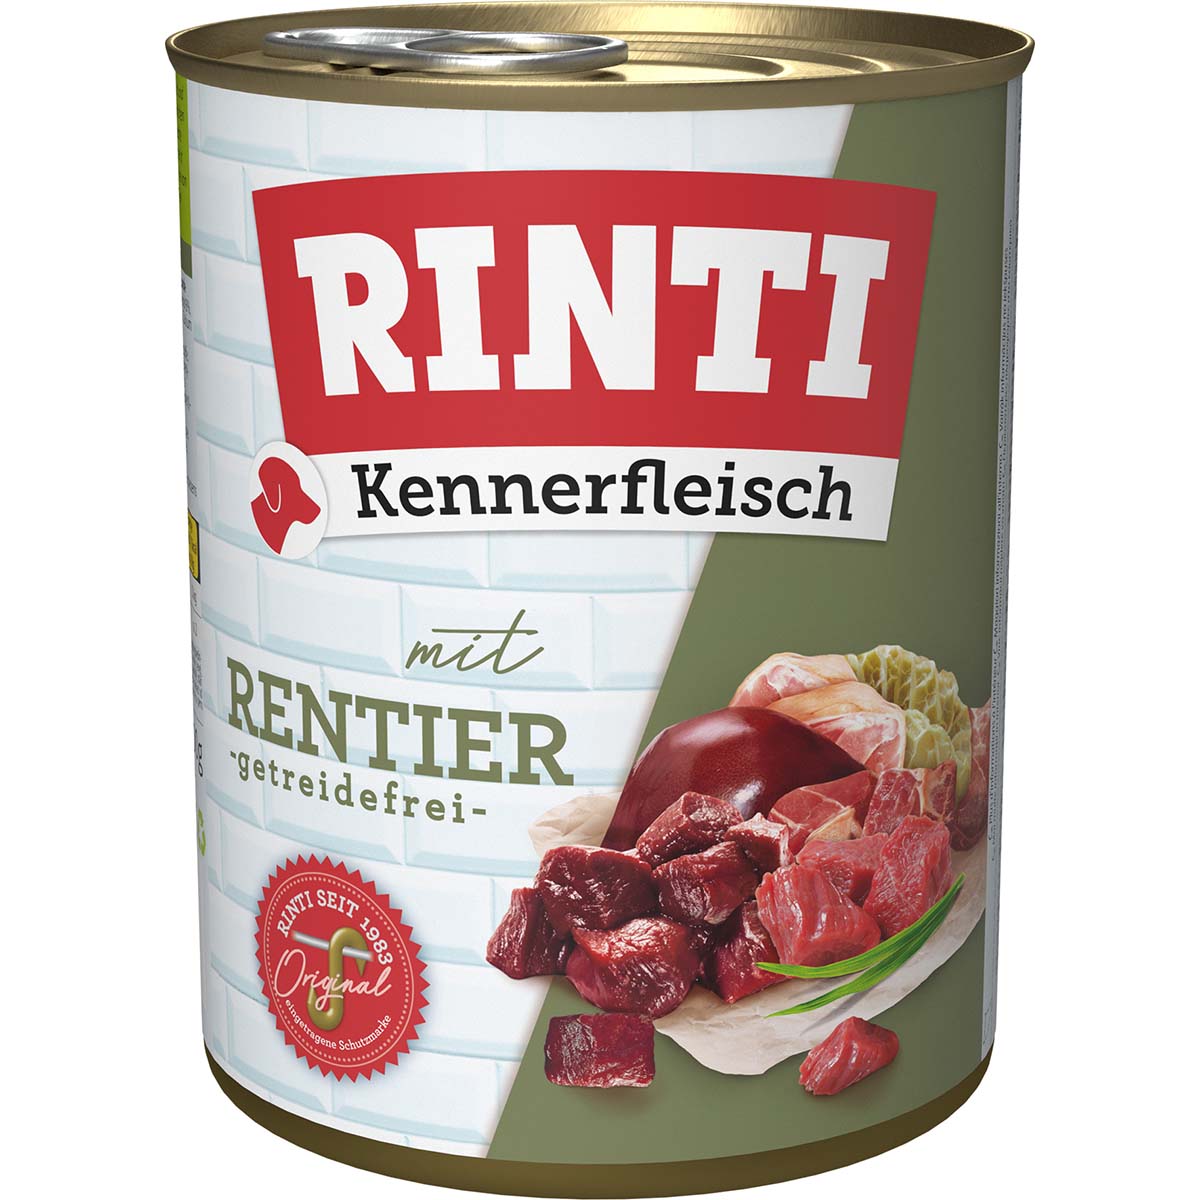 Rinti Kennerfleisch mit Rentier gf 12x800g